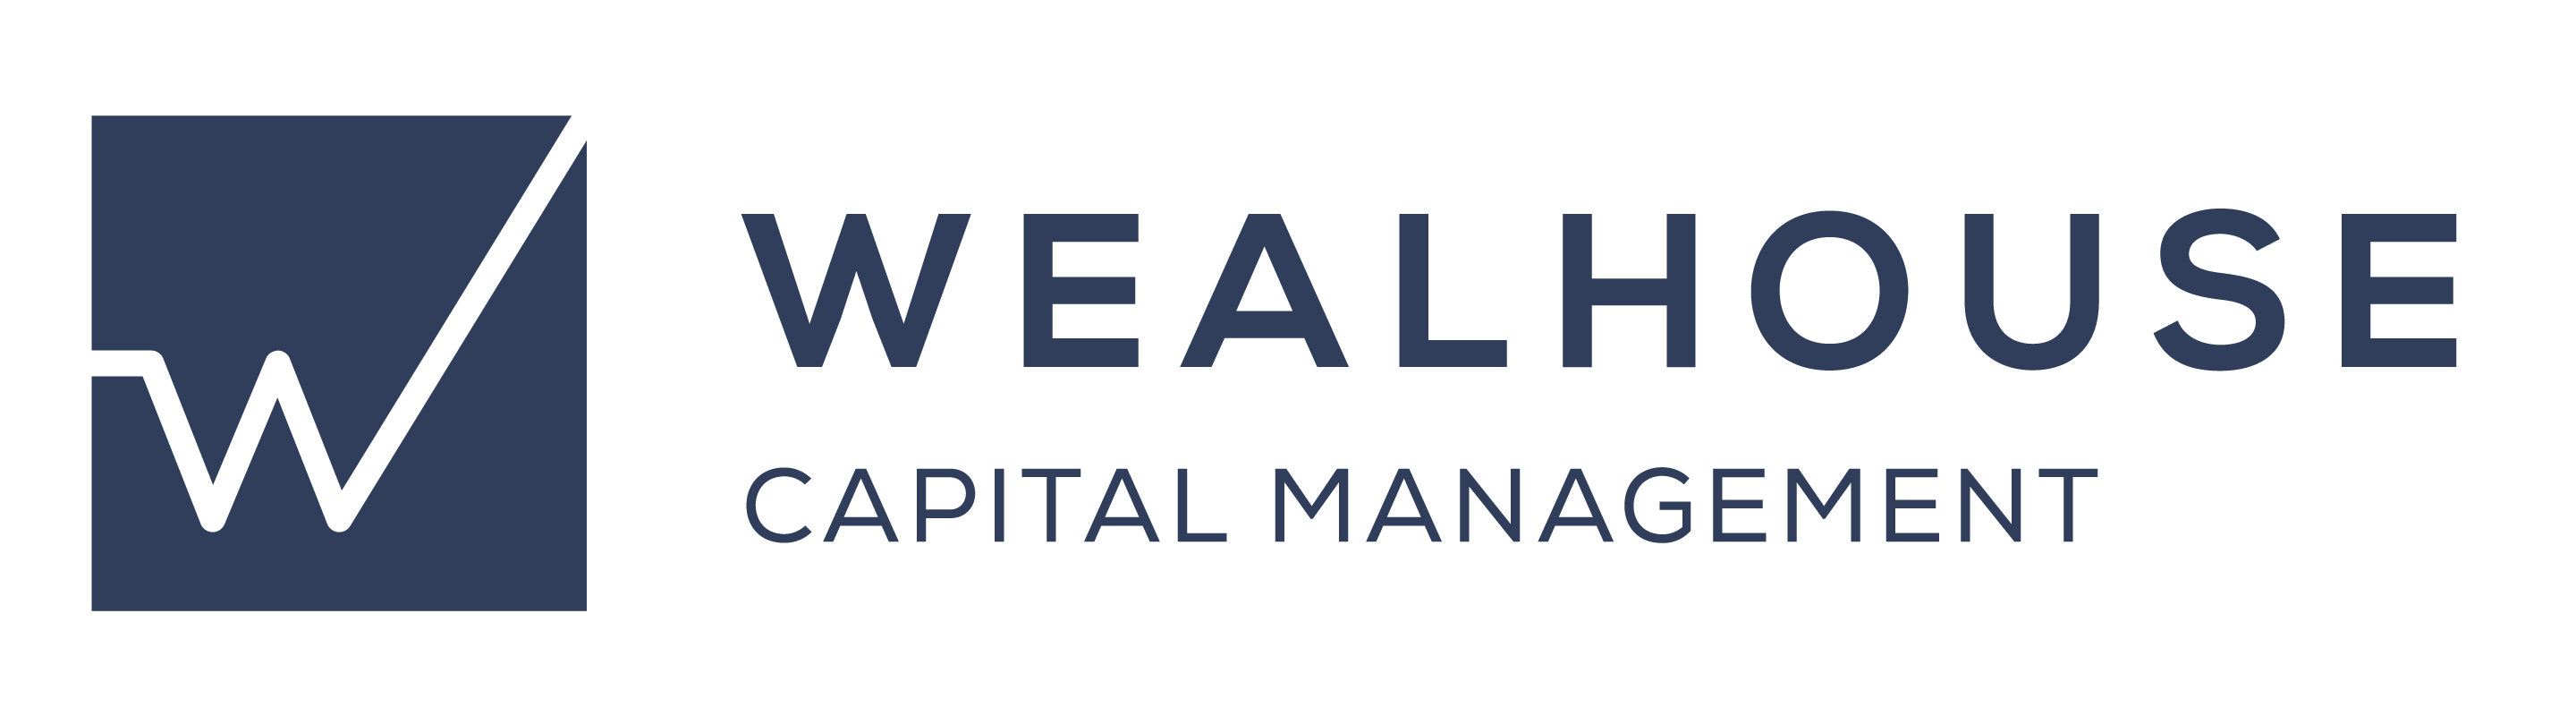 Wealhouse Capital Management